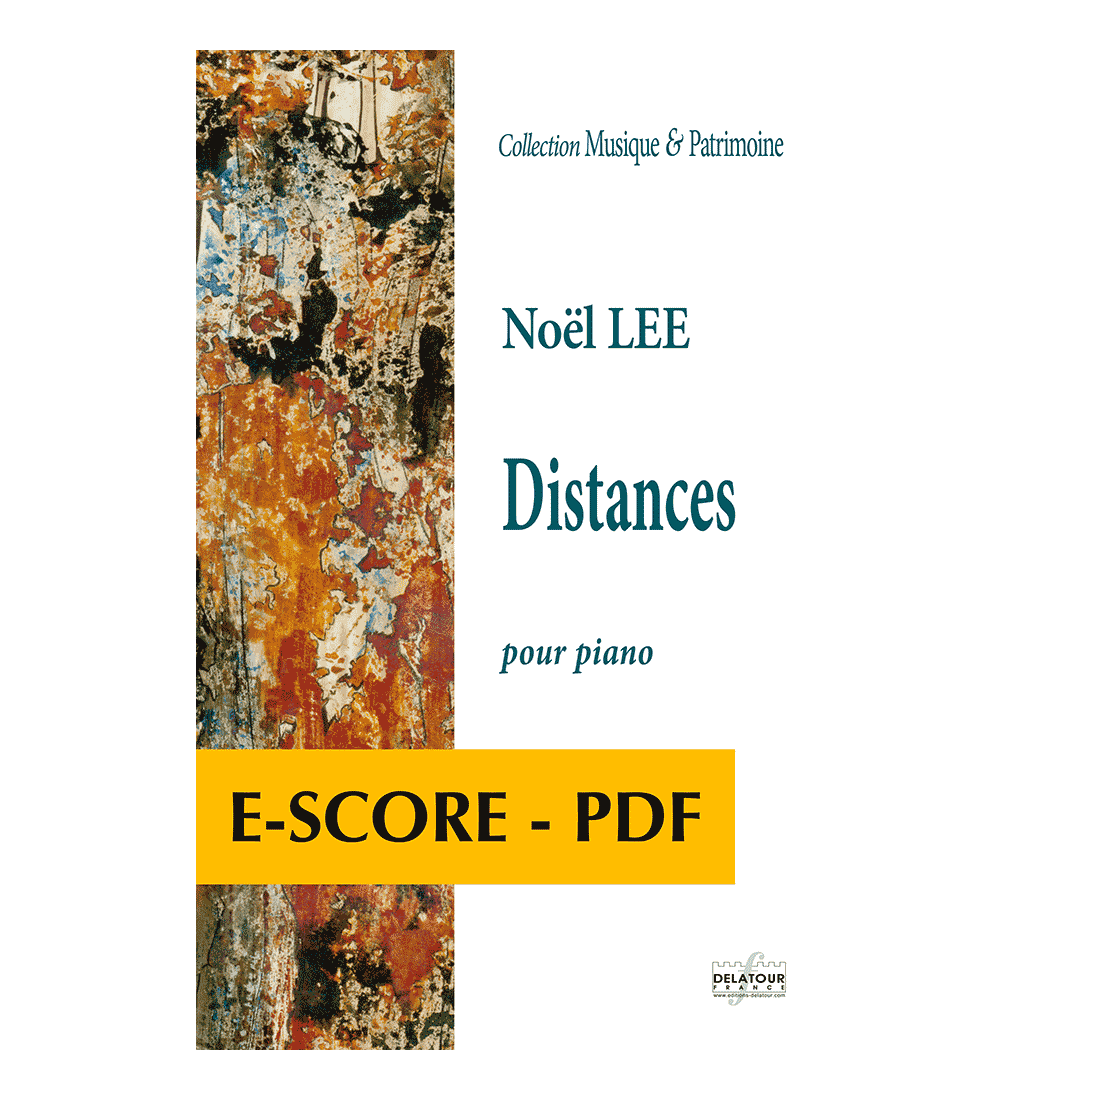 Distances for piano - E-score PDF